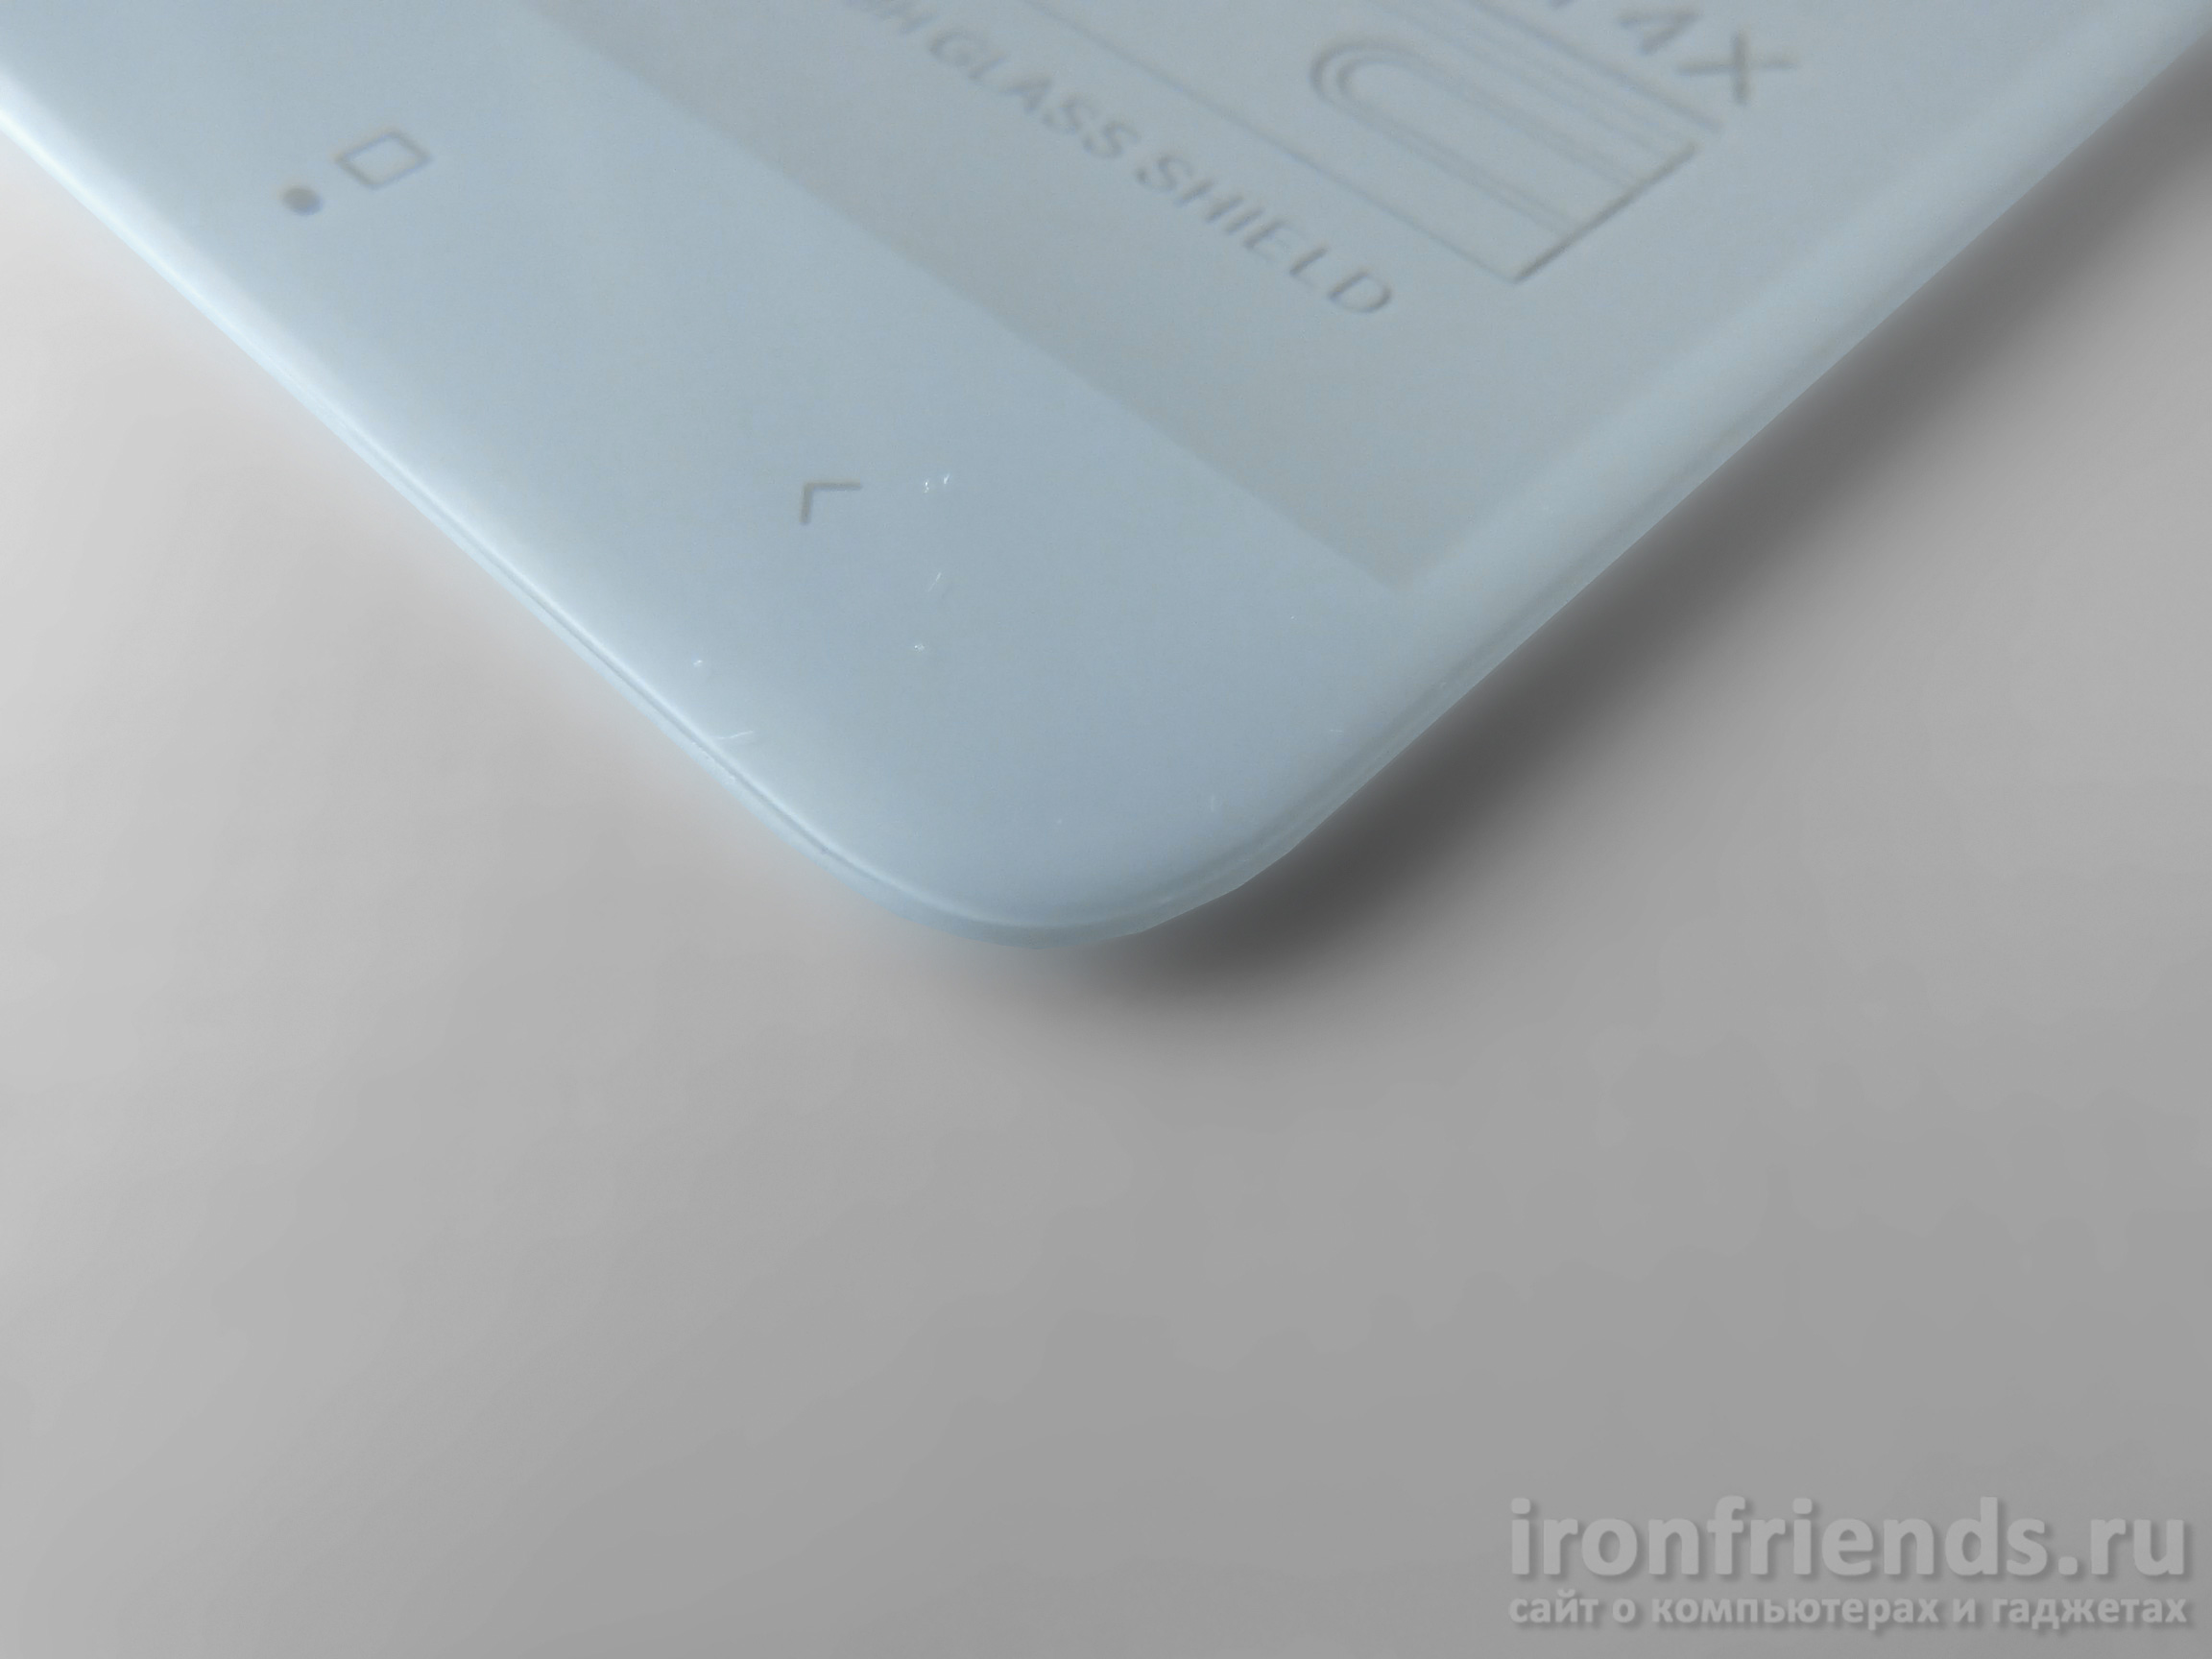 Стекло Bonair для Xiaomi Redmi 4X